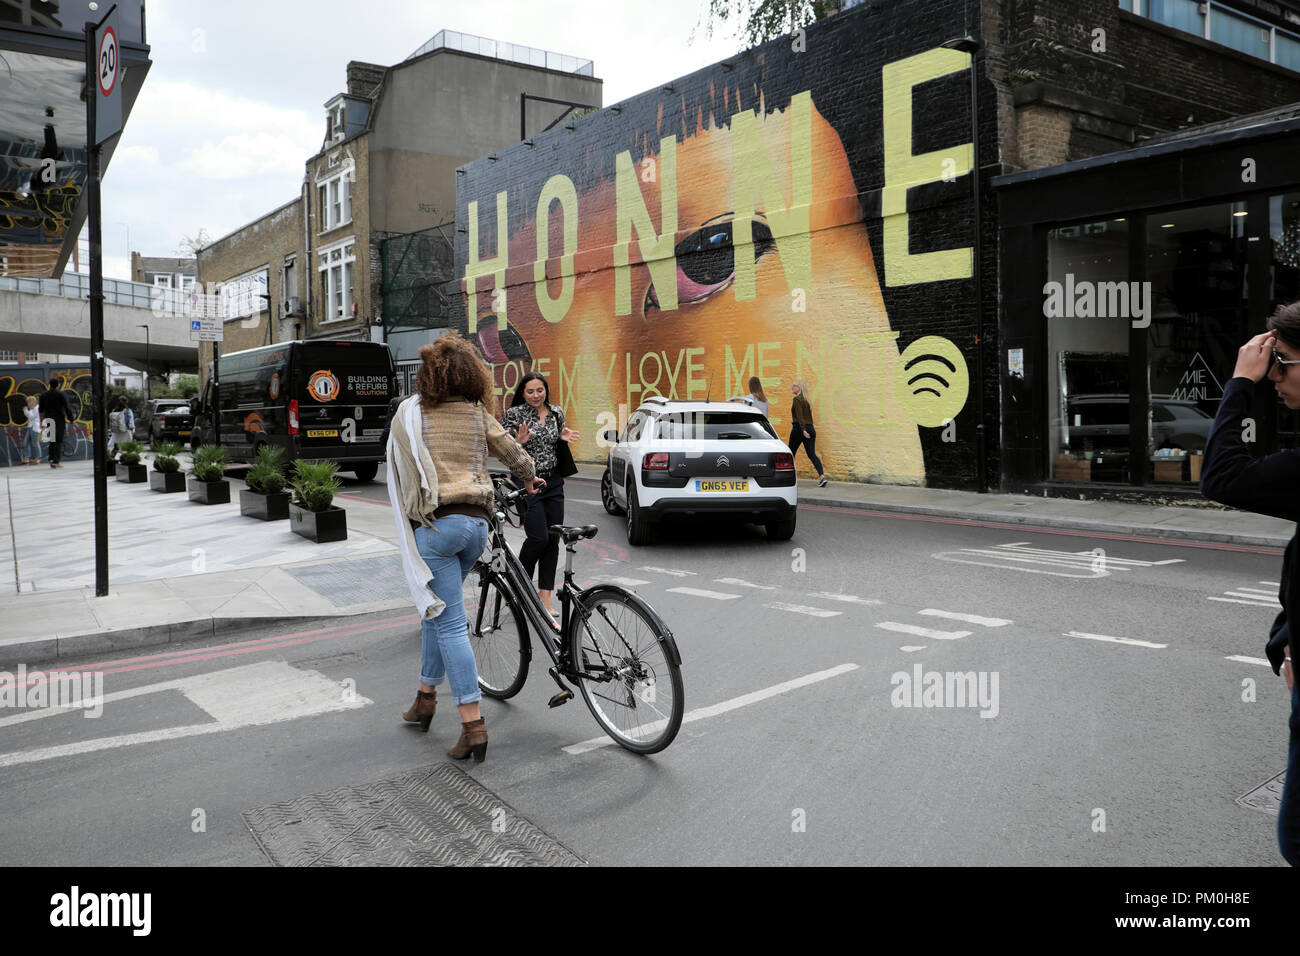 Donna che cammina con la bici in strada dal cittadino M Hotel passato HONNE carta murale street art pittura su Holywell Ln Shoreditch East London REGNO UNITO KATHY DEWITT Foto Stock